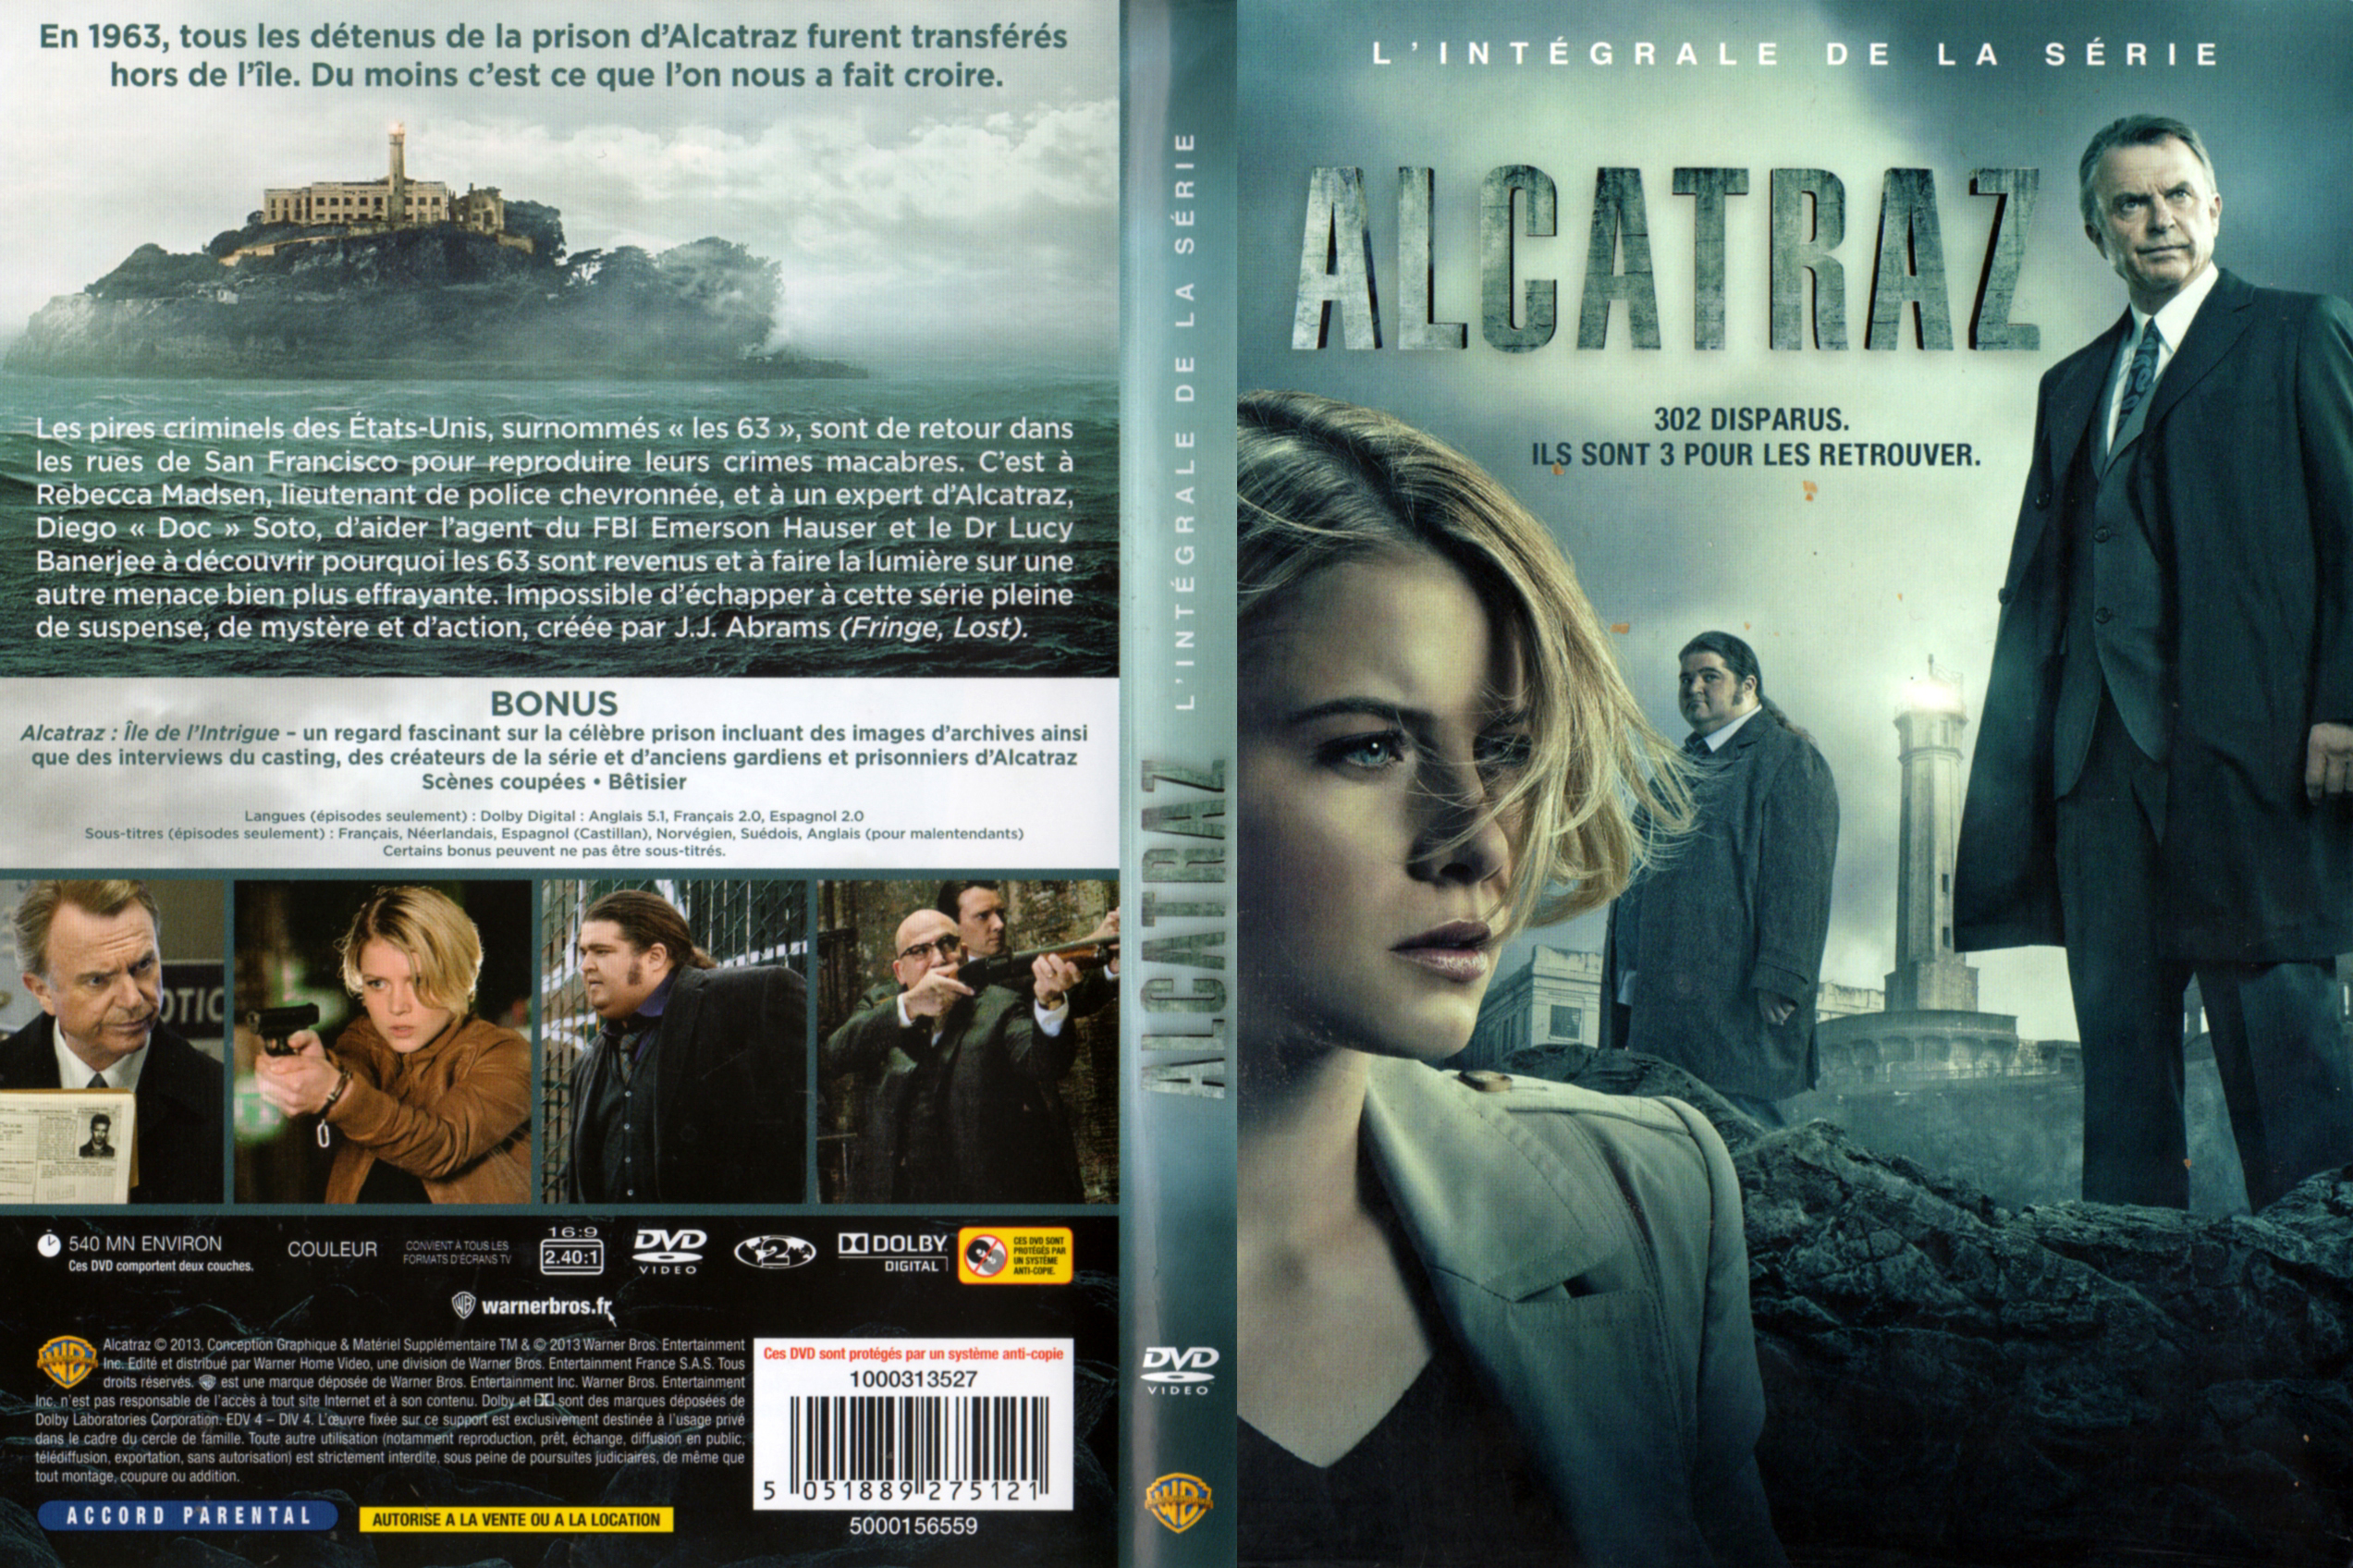 Jaquette DVD Alcatraz (Intgrale) v2